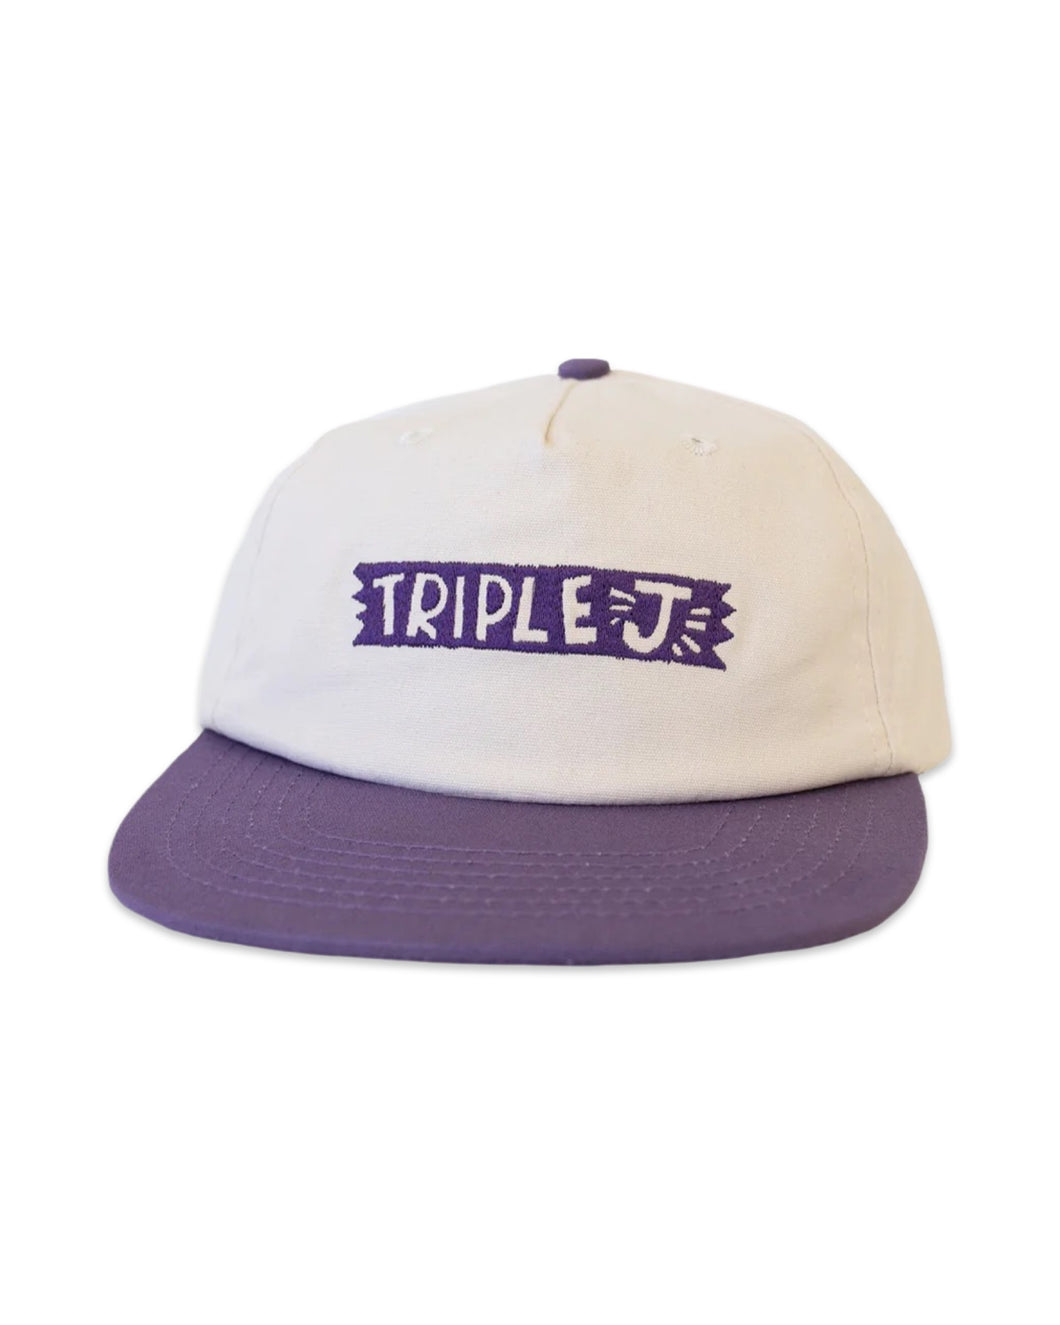 Triple J Canvas Strapback Cap in White / Purple ⏐ One Size